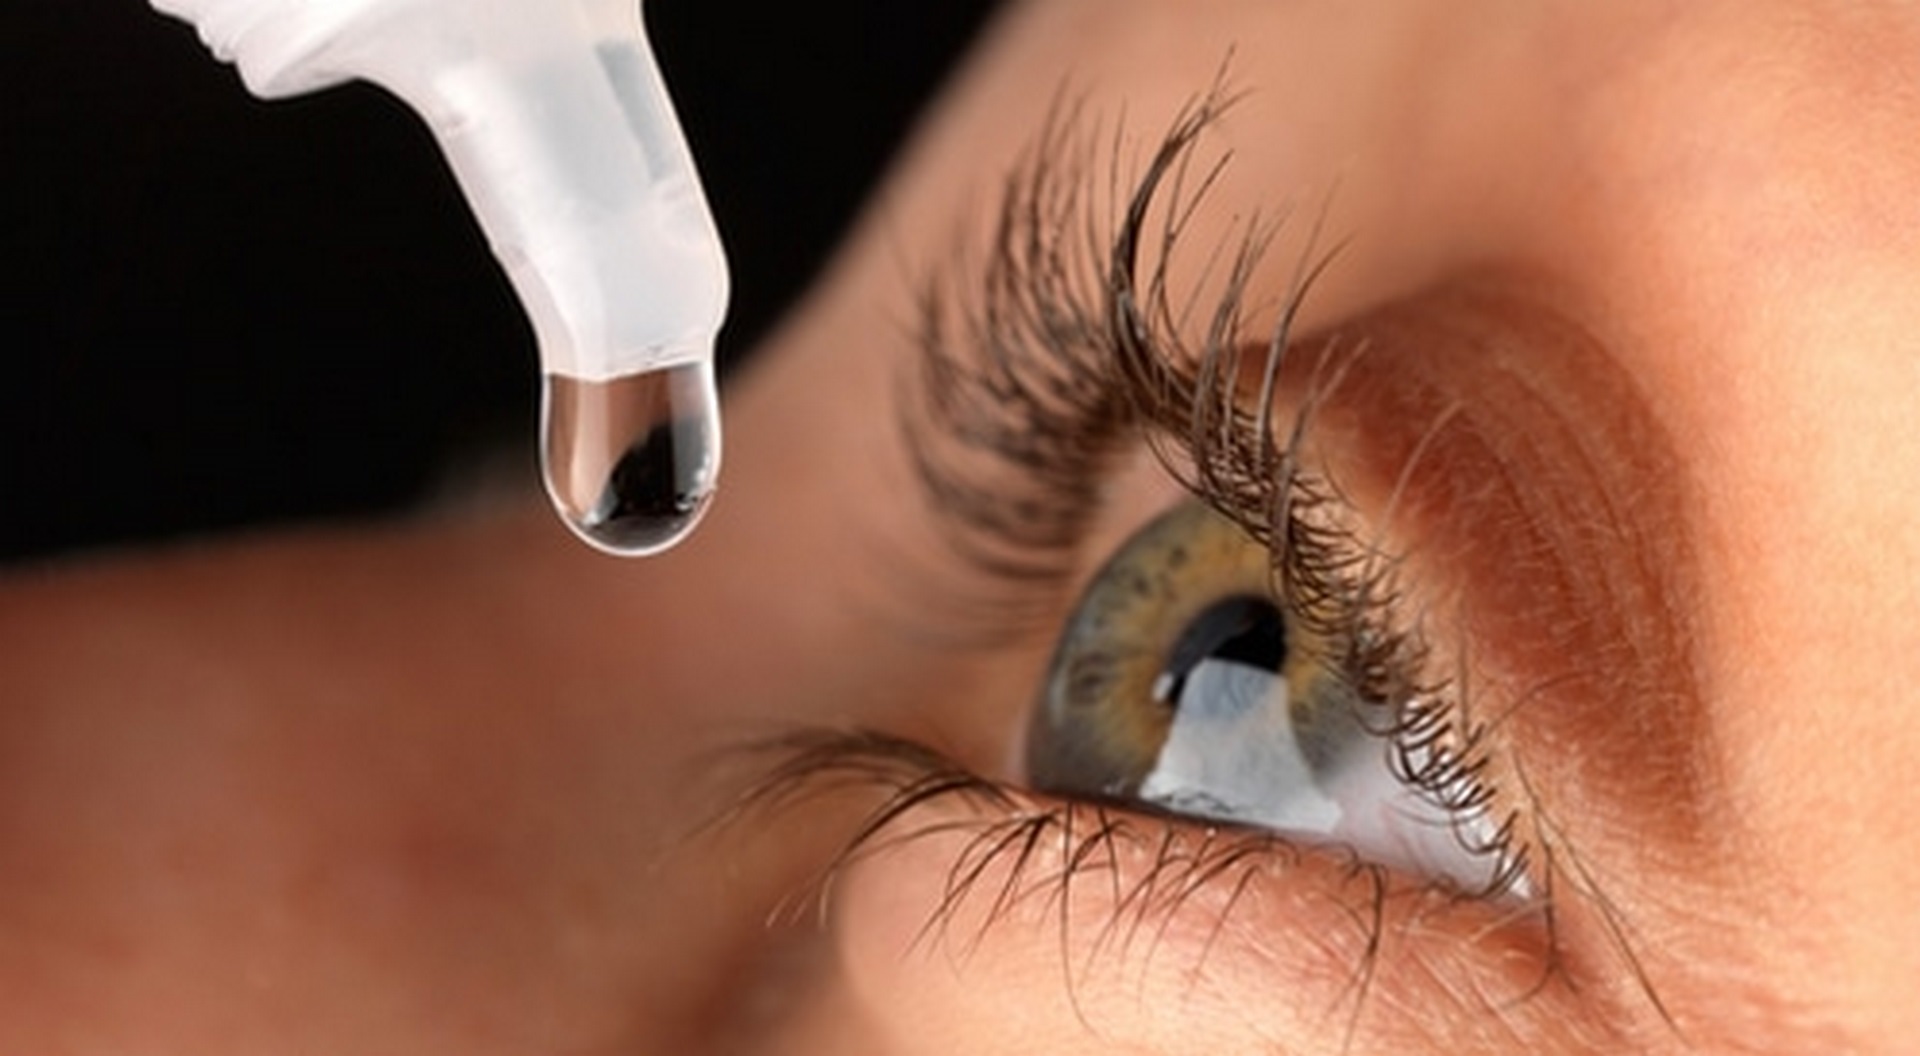  إدارة الدواء والغذاء الأمريكية توافق على استخدام قطرة عين قد تغني الإنسان عن النظارات 